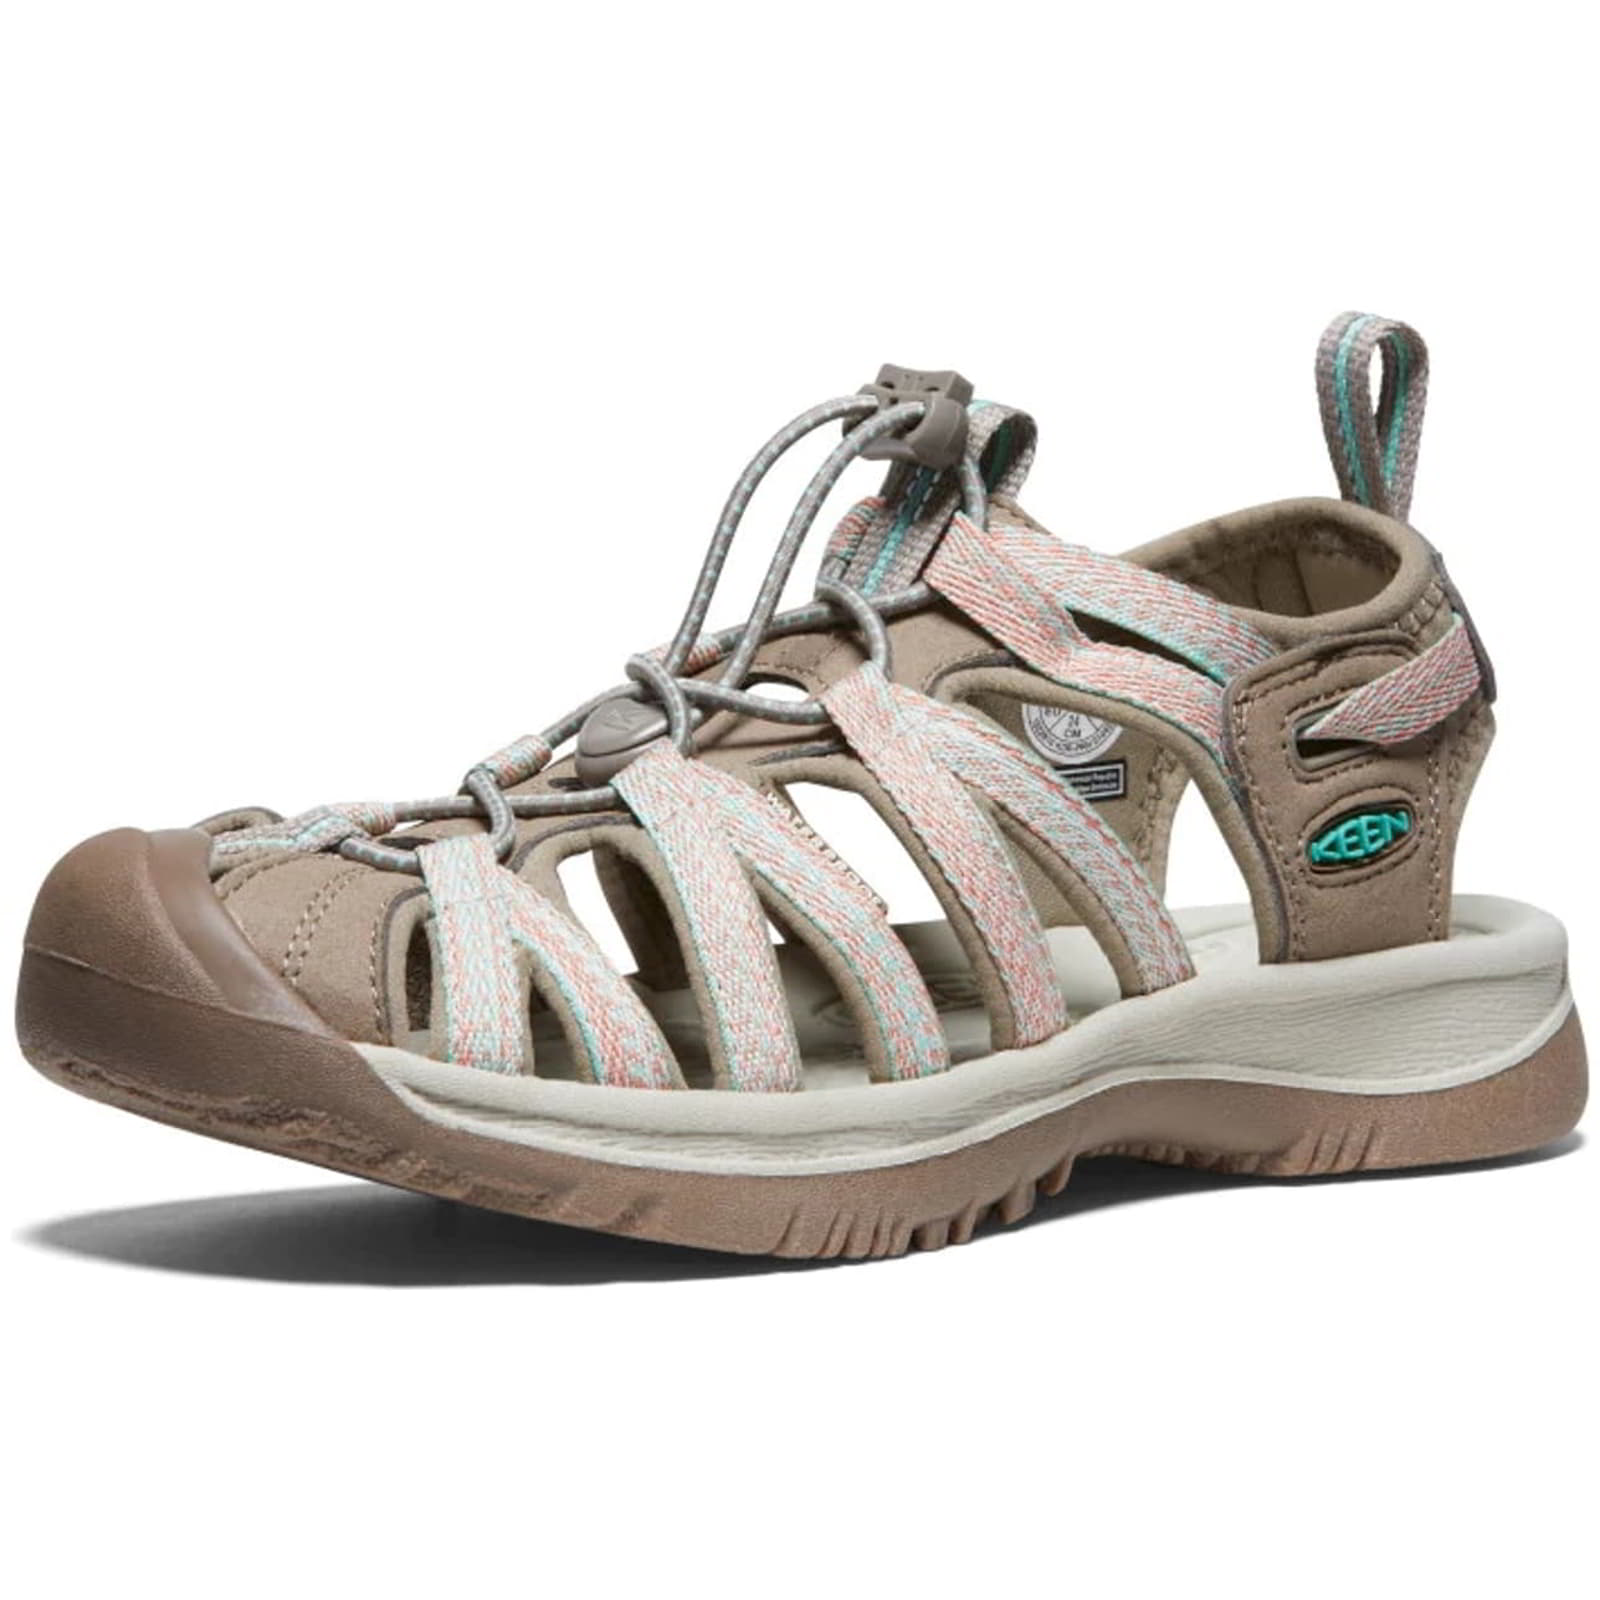 Keen Whisper Women's Waterproof Walking Hiking Sandals - UK 6 / 39 / US 8.5